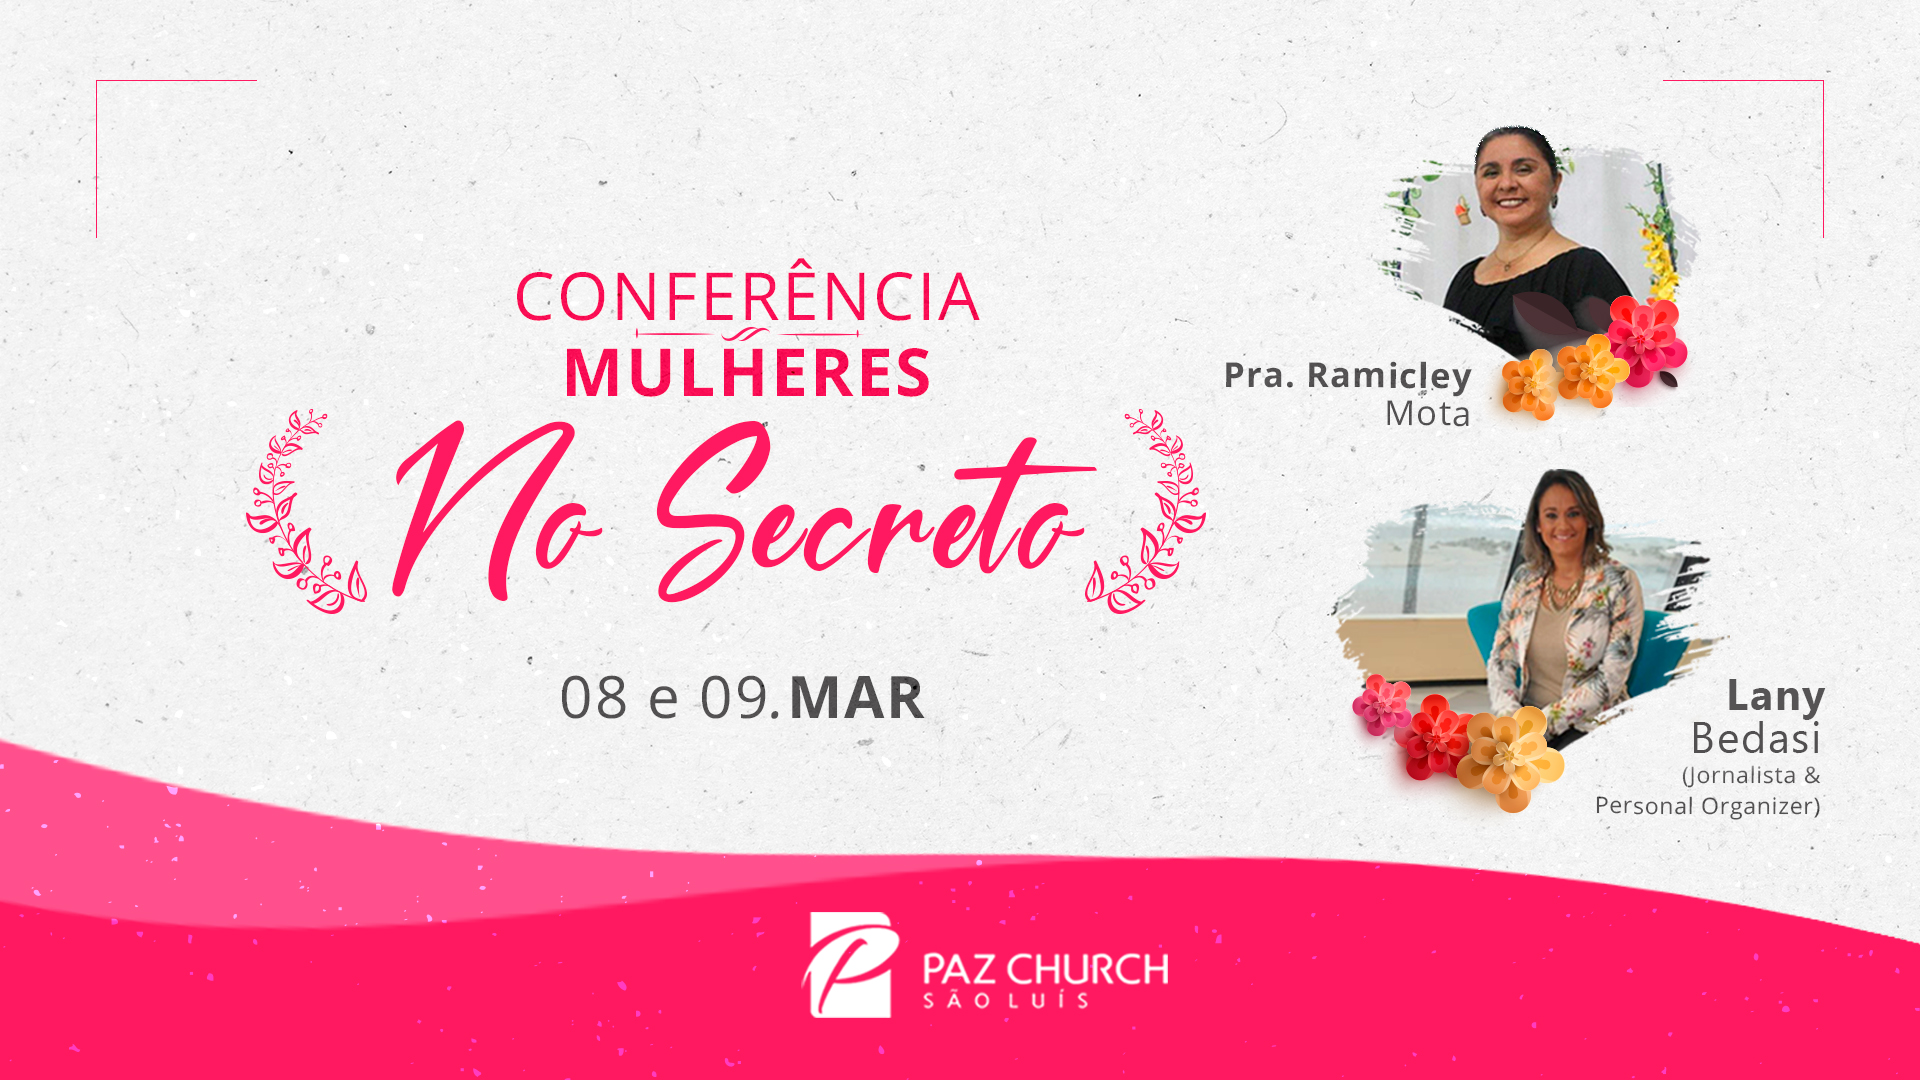 Conferencia de Mulheres, Conferência Mulheres promovendo a Paz Painel I, By Igreja do Nazareno Distrito Sul - Cabo Verde